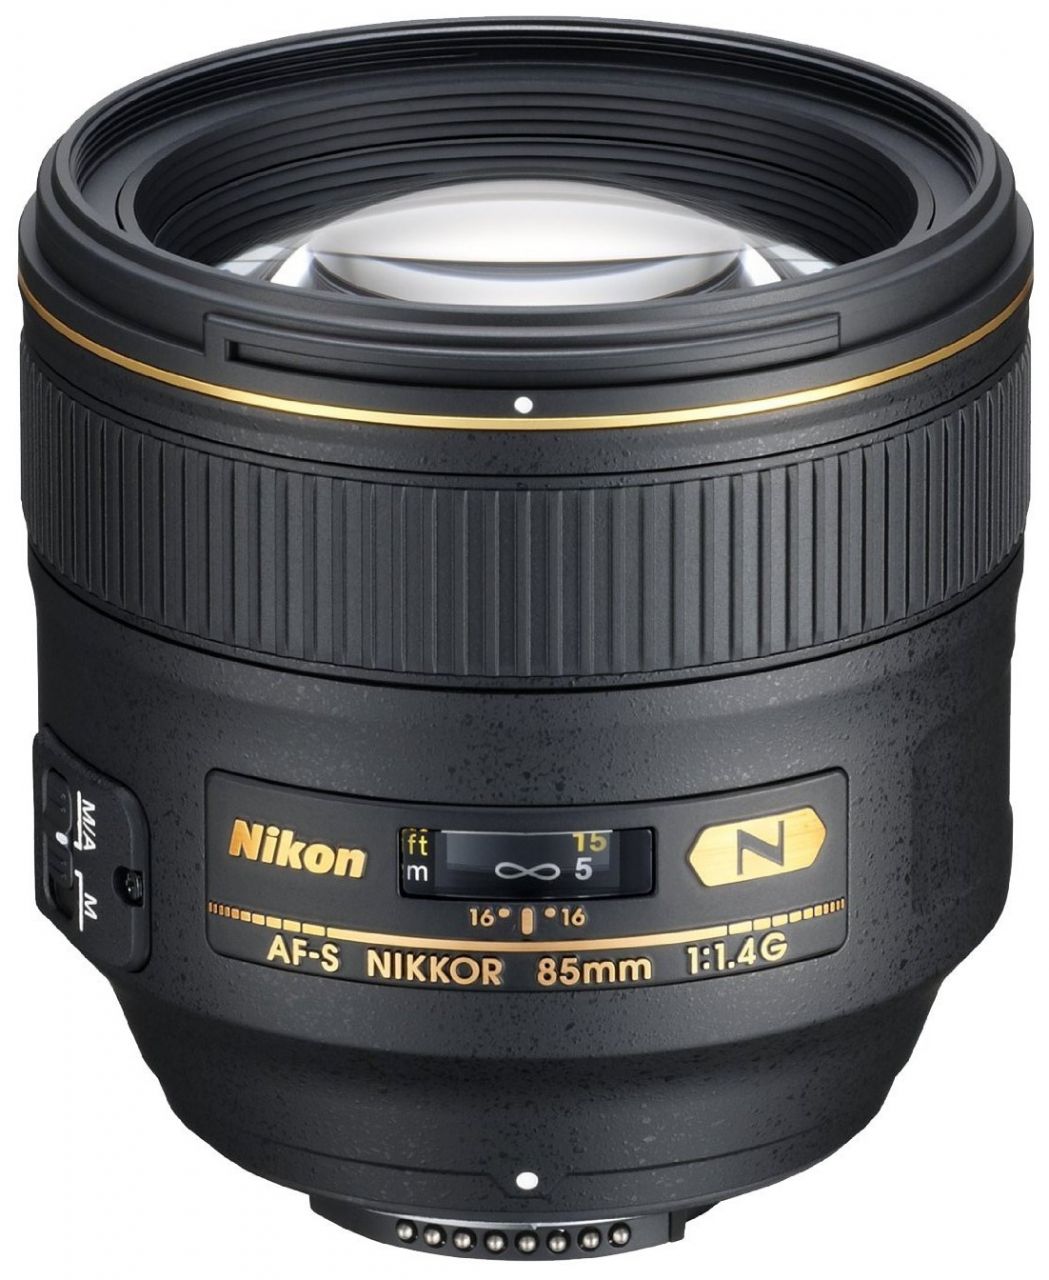 Nikon 85mm f/1.4G